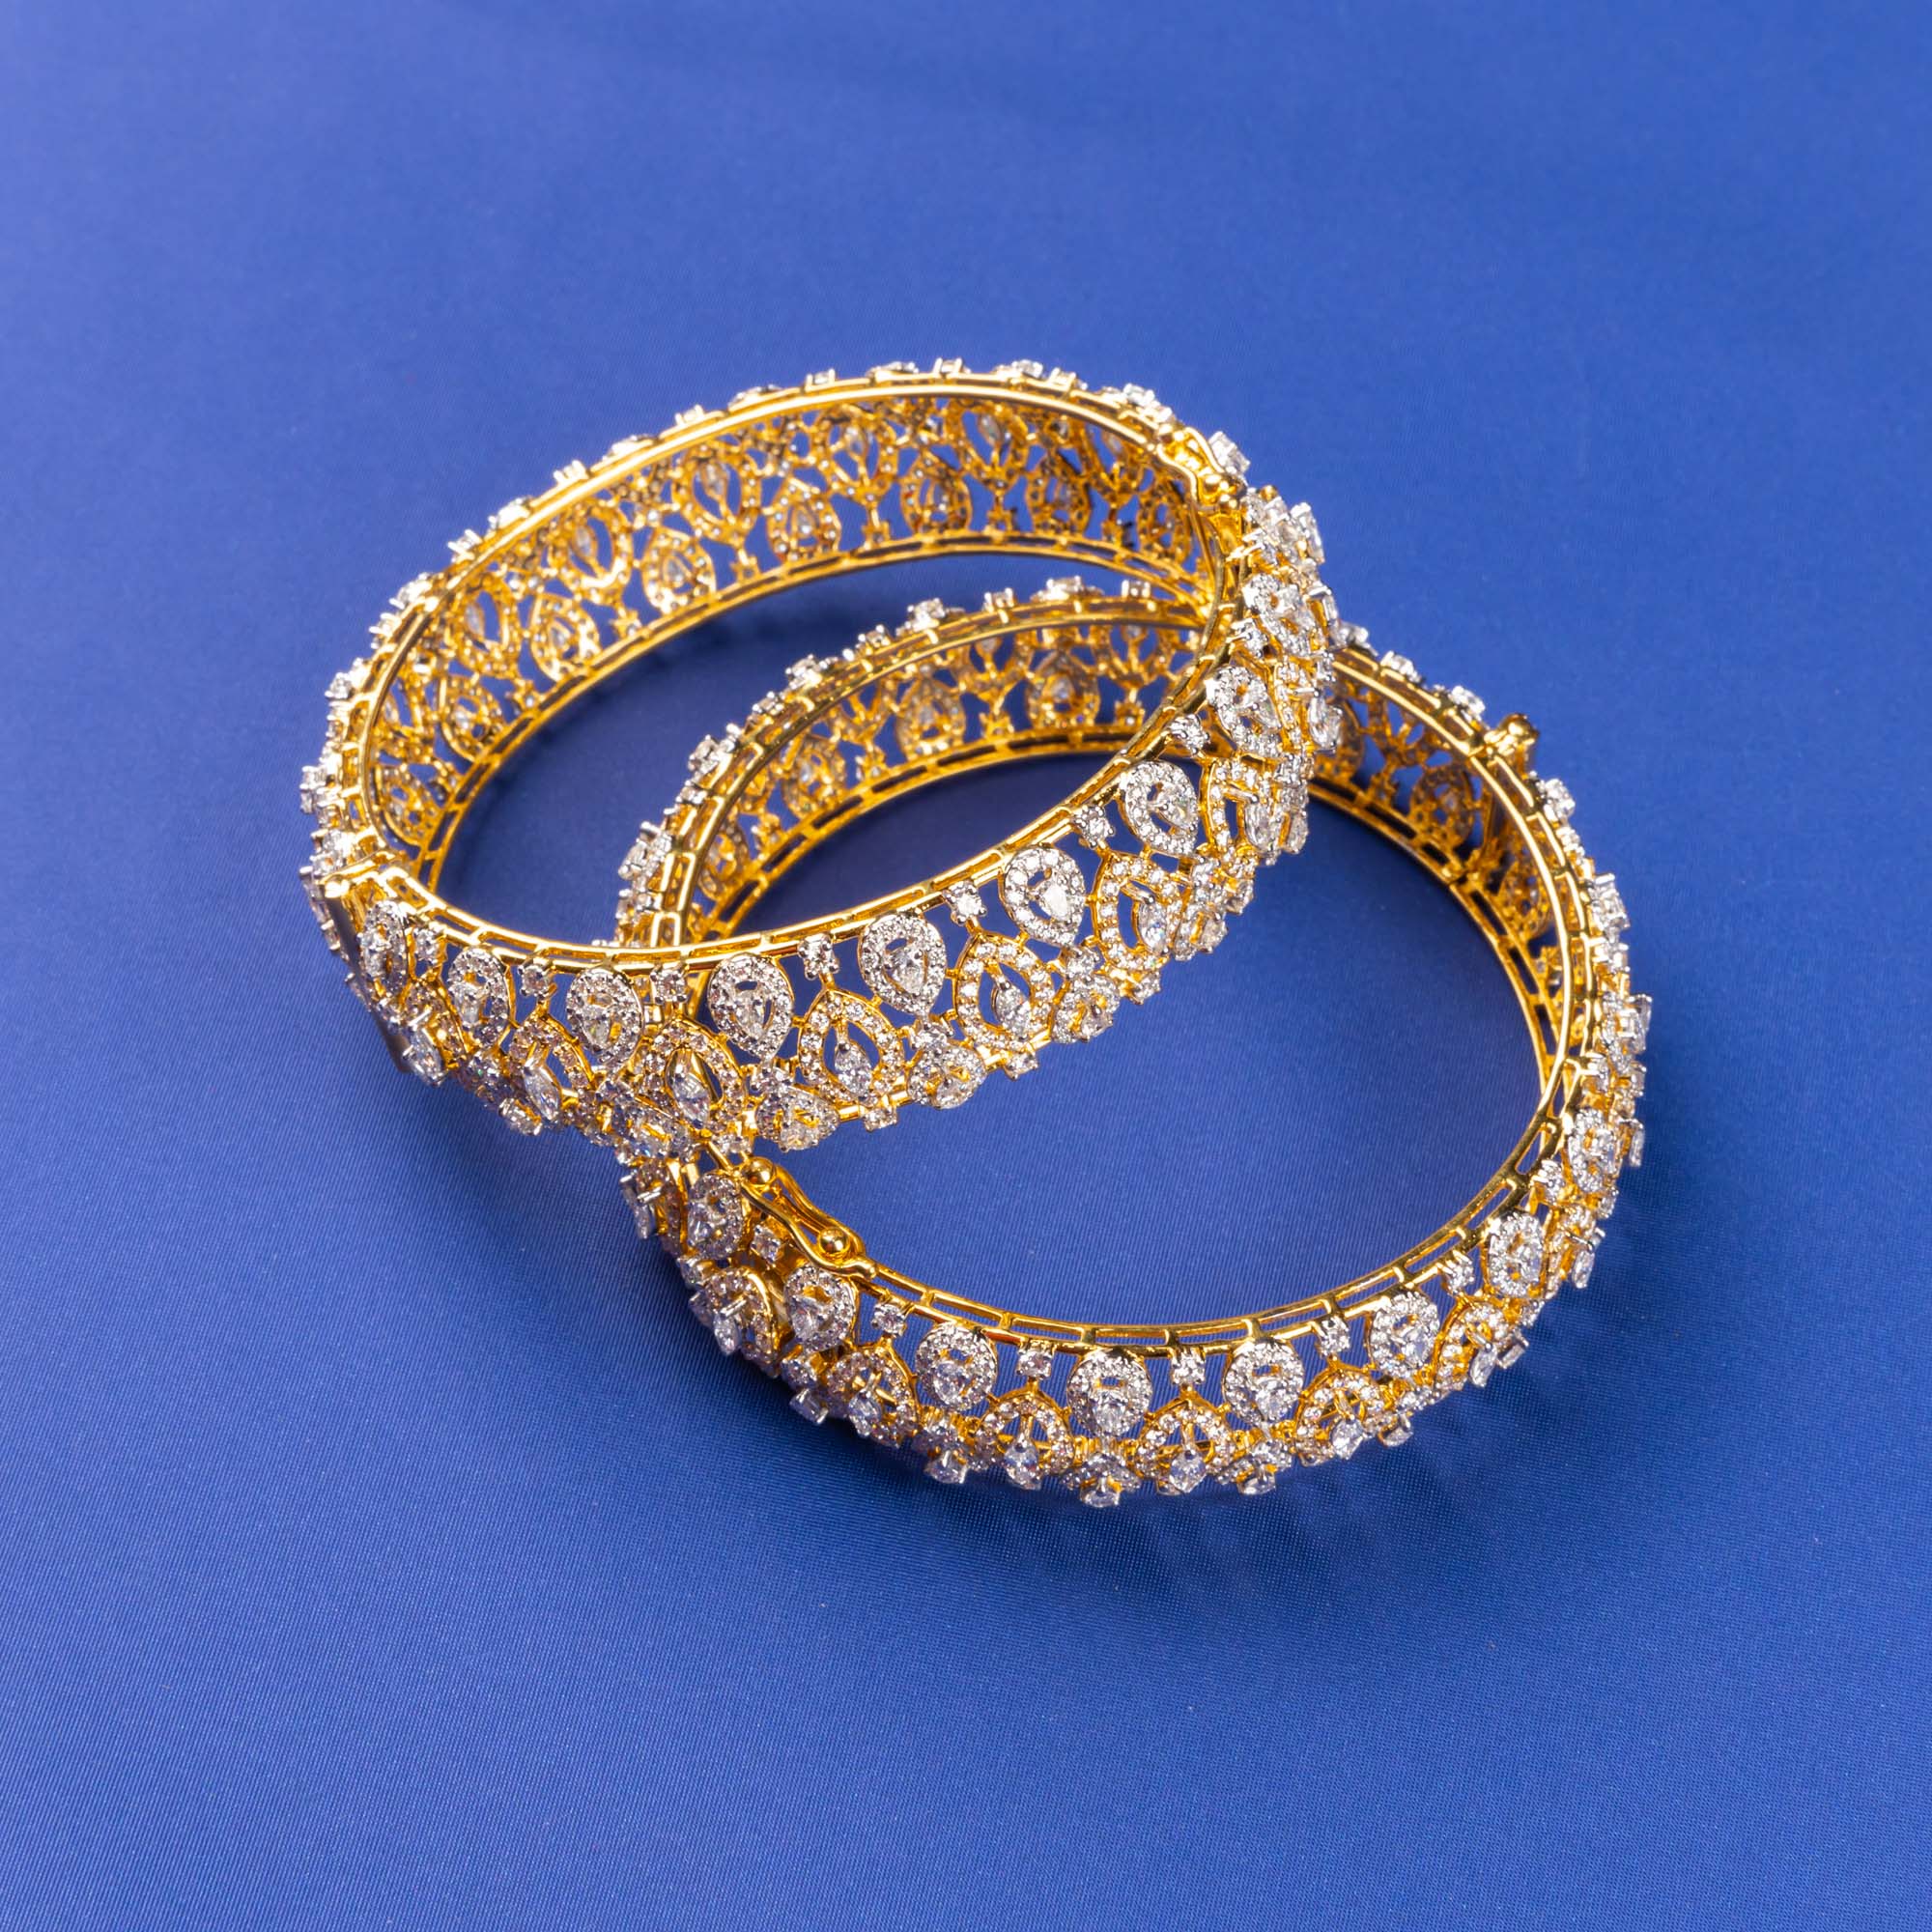 White Gold Luster: Handmade 18K WG Diamond Bracelet